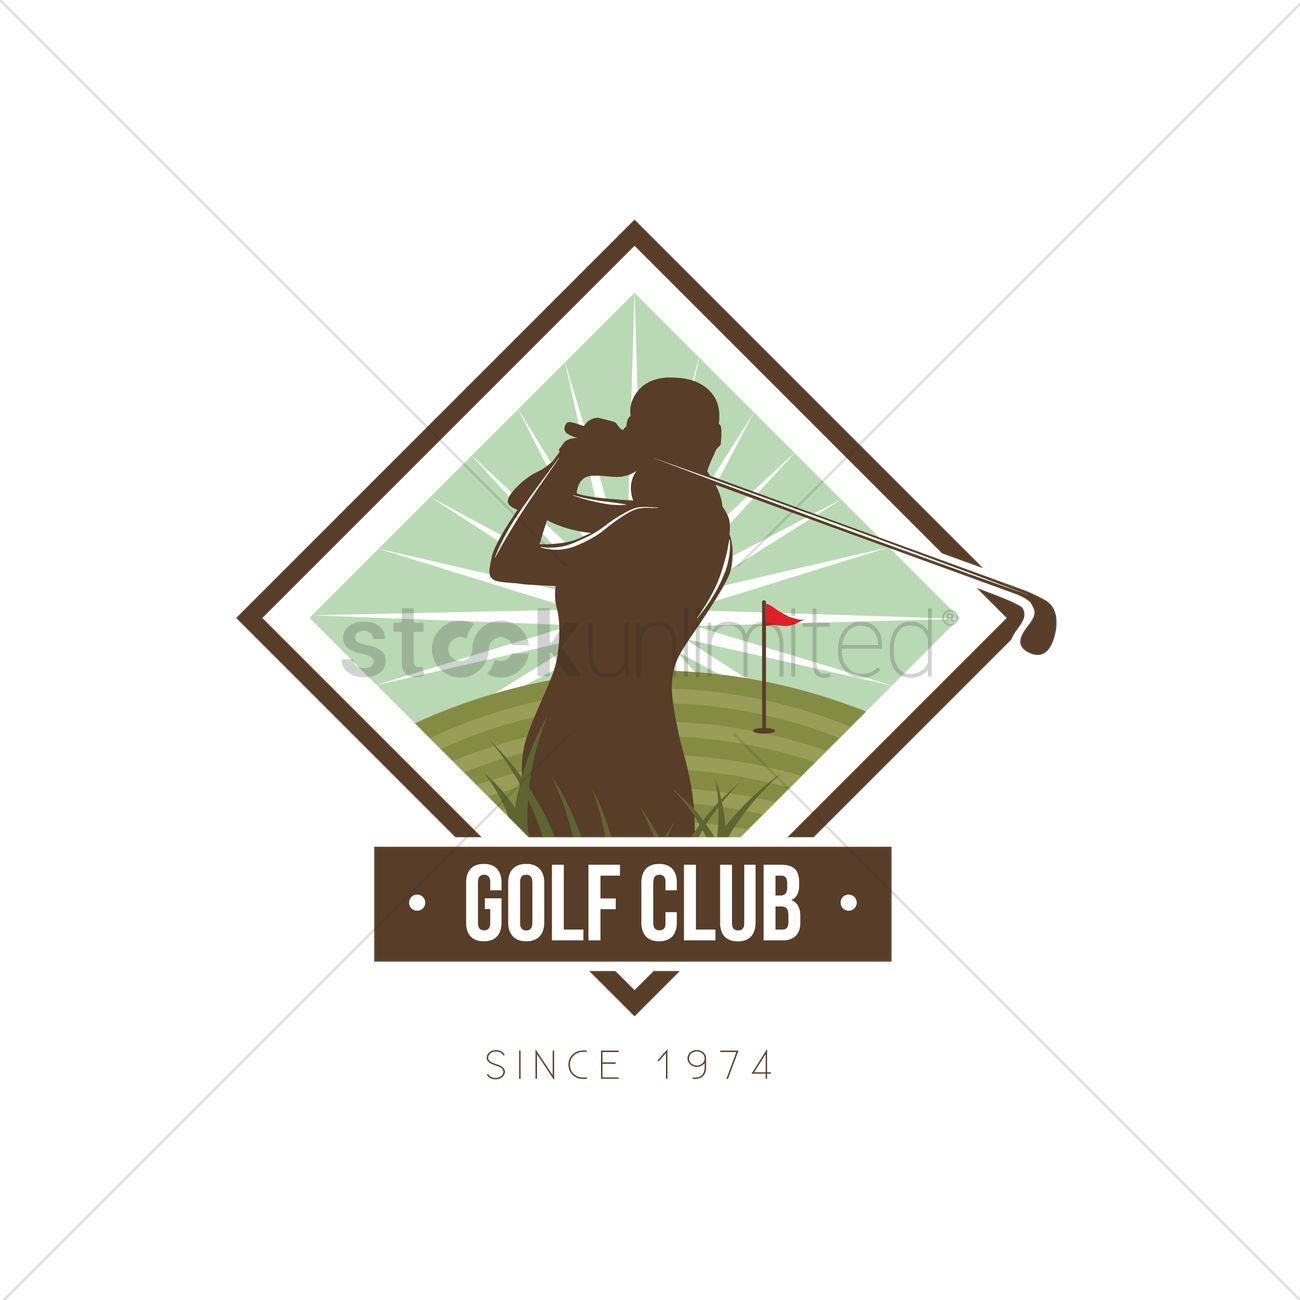 Golf Club Logo - Golf club logo element design Vector Image - 2008750 | StockUnlimited